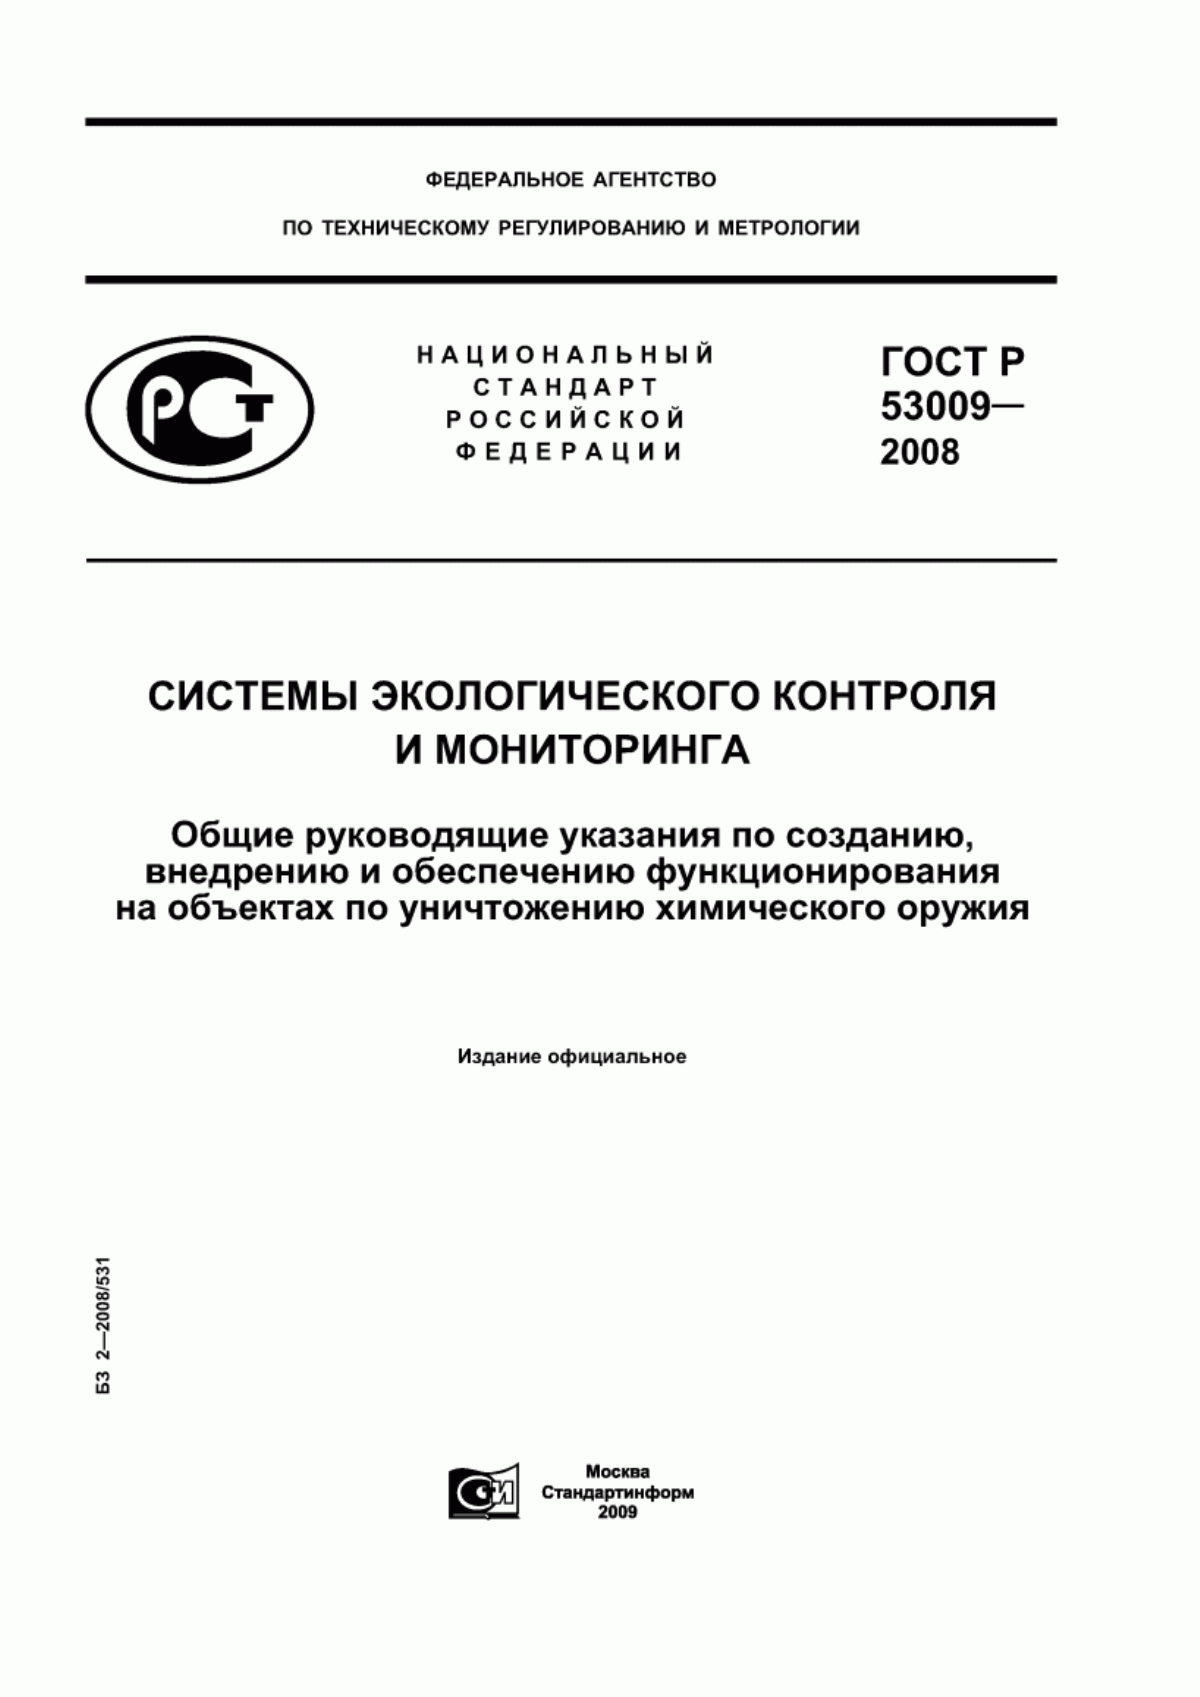 ГОСТ Р 53009-2008 Системы экологического контроля и мониторинга. Общие руководящие указания по созданию, внедрению и обеспечению функционирования на объектах по уничтожению химического оружия